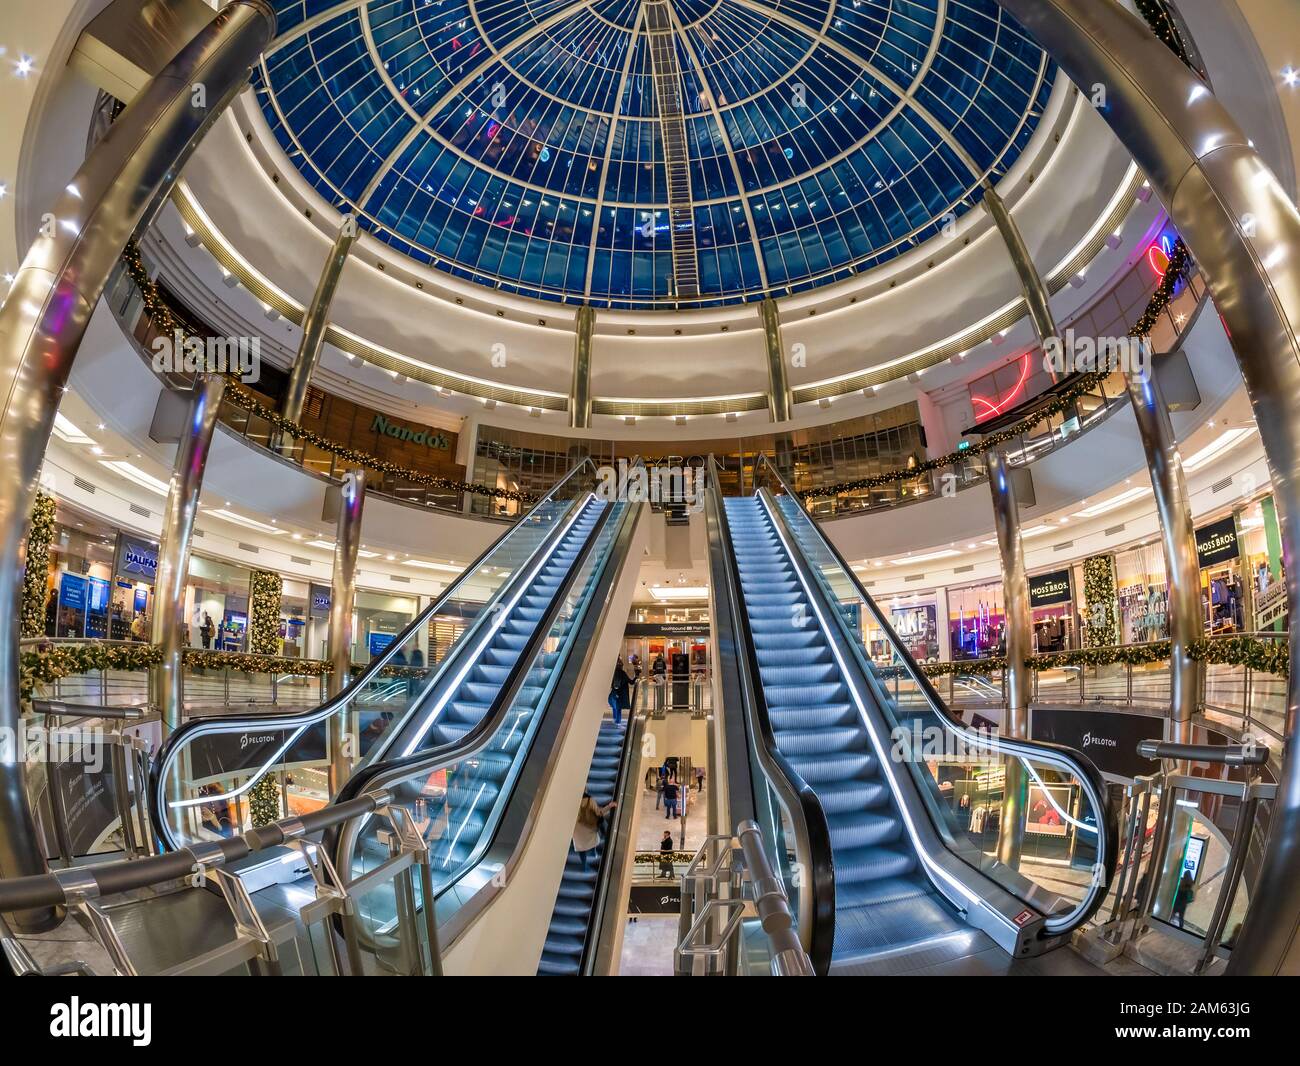 Londres, Inglaterra, Reino Unido - 11 de diciembre de 2019: Amplia vista del centro comercial interior One Canada con arquitectura artística de techo abovedado y escaleras rodantes Foto de stock